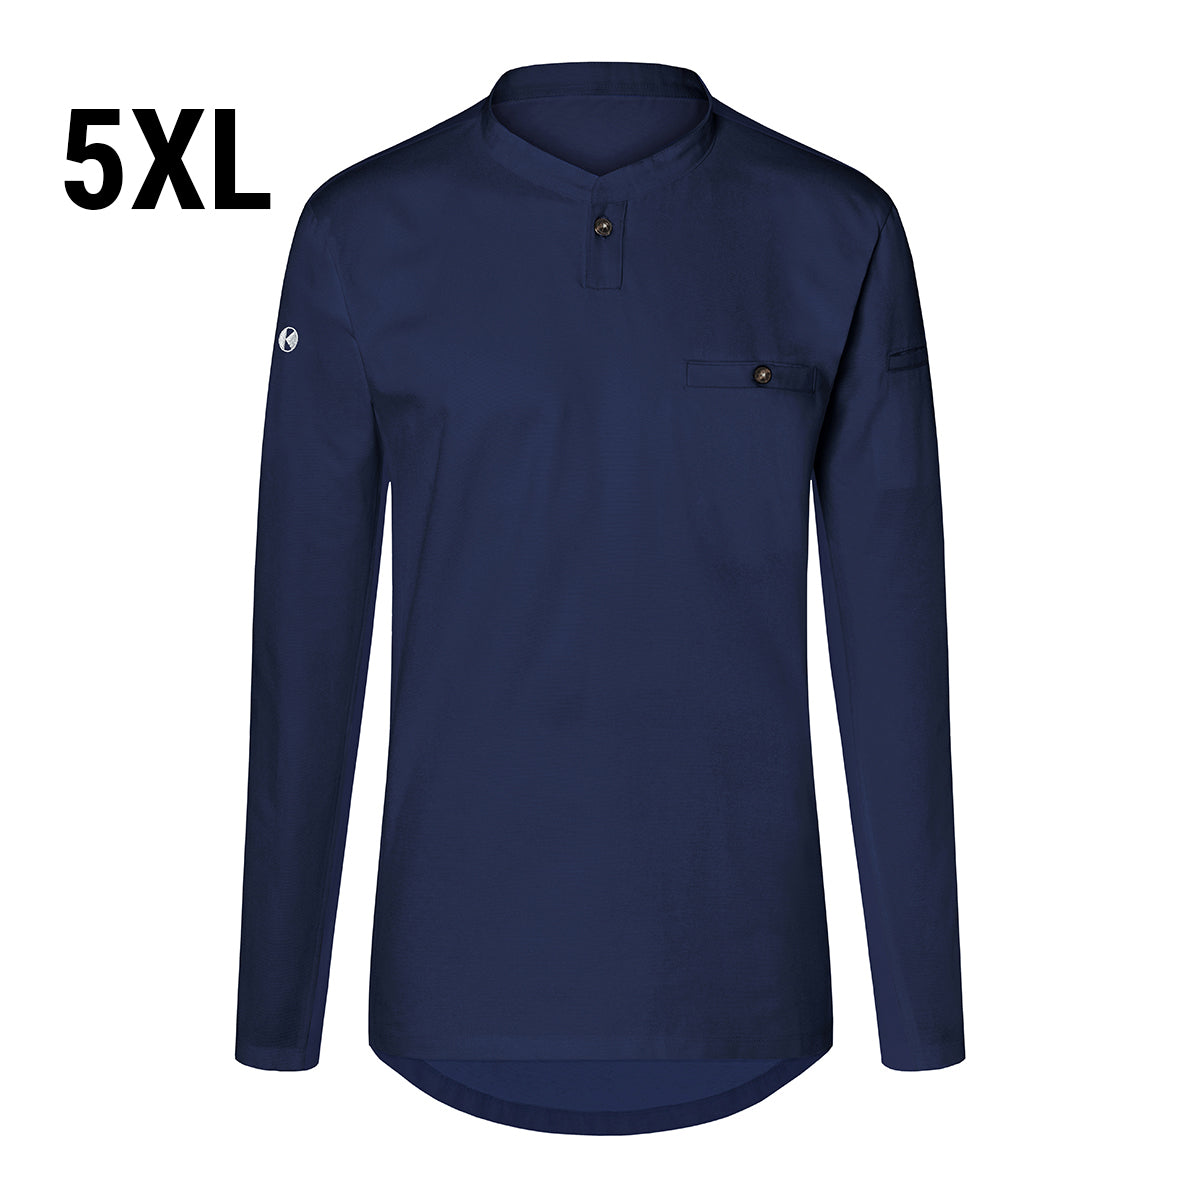 (6 stk) Karlowsky - Langærmet arbejdsskjorte til herrer Performance - Marineblå - Størrelse: 5XL